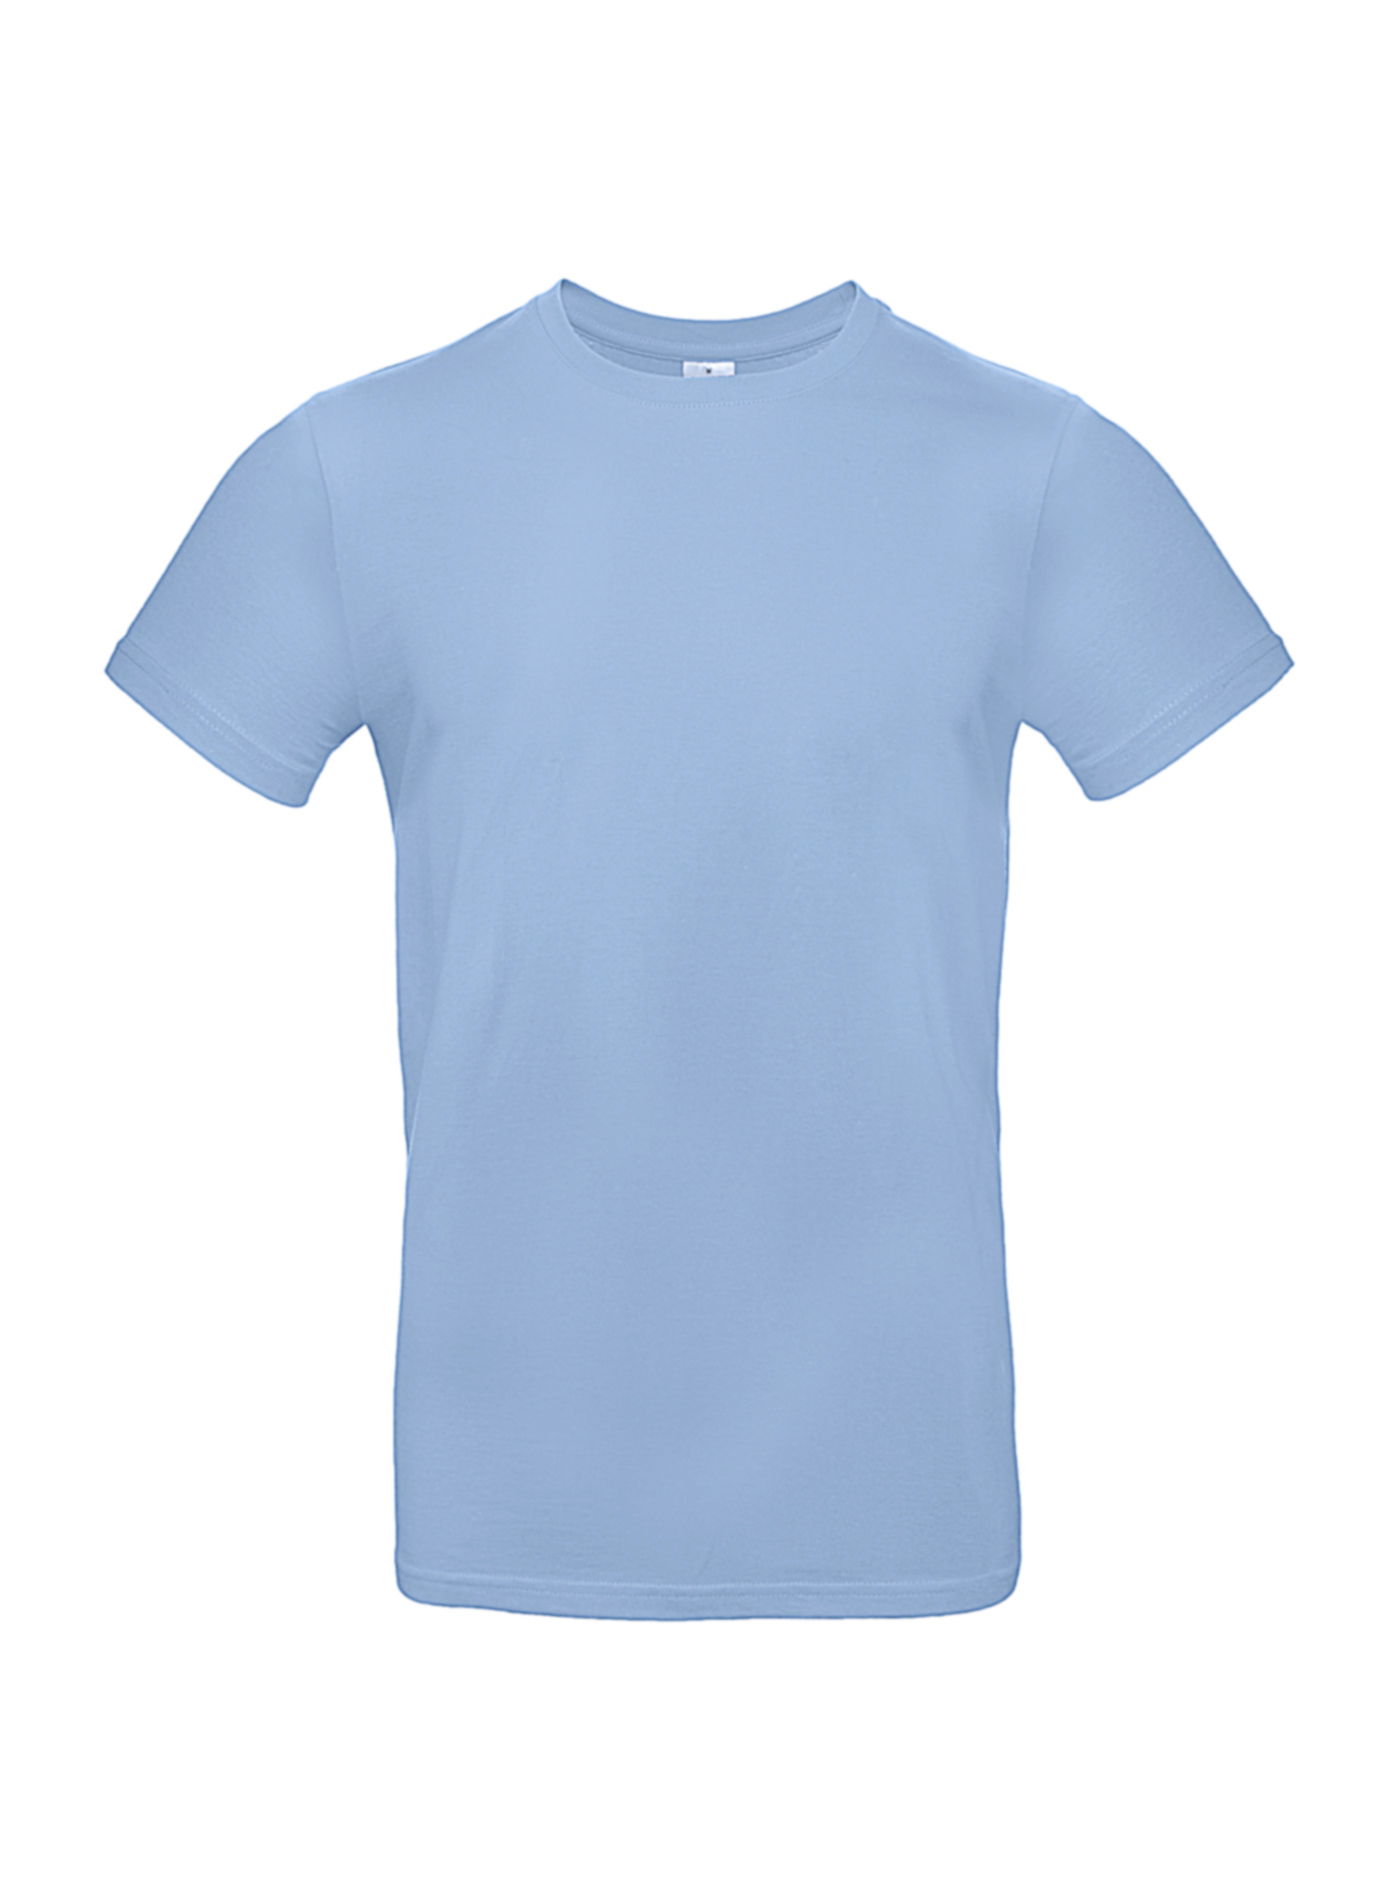 Silnější bavlněné pánské tričko - Blankytně modrá XL